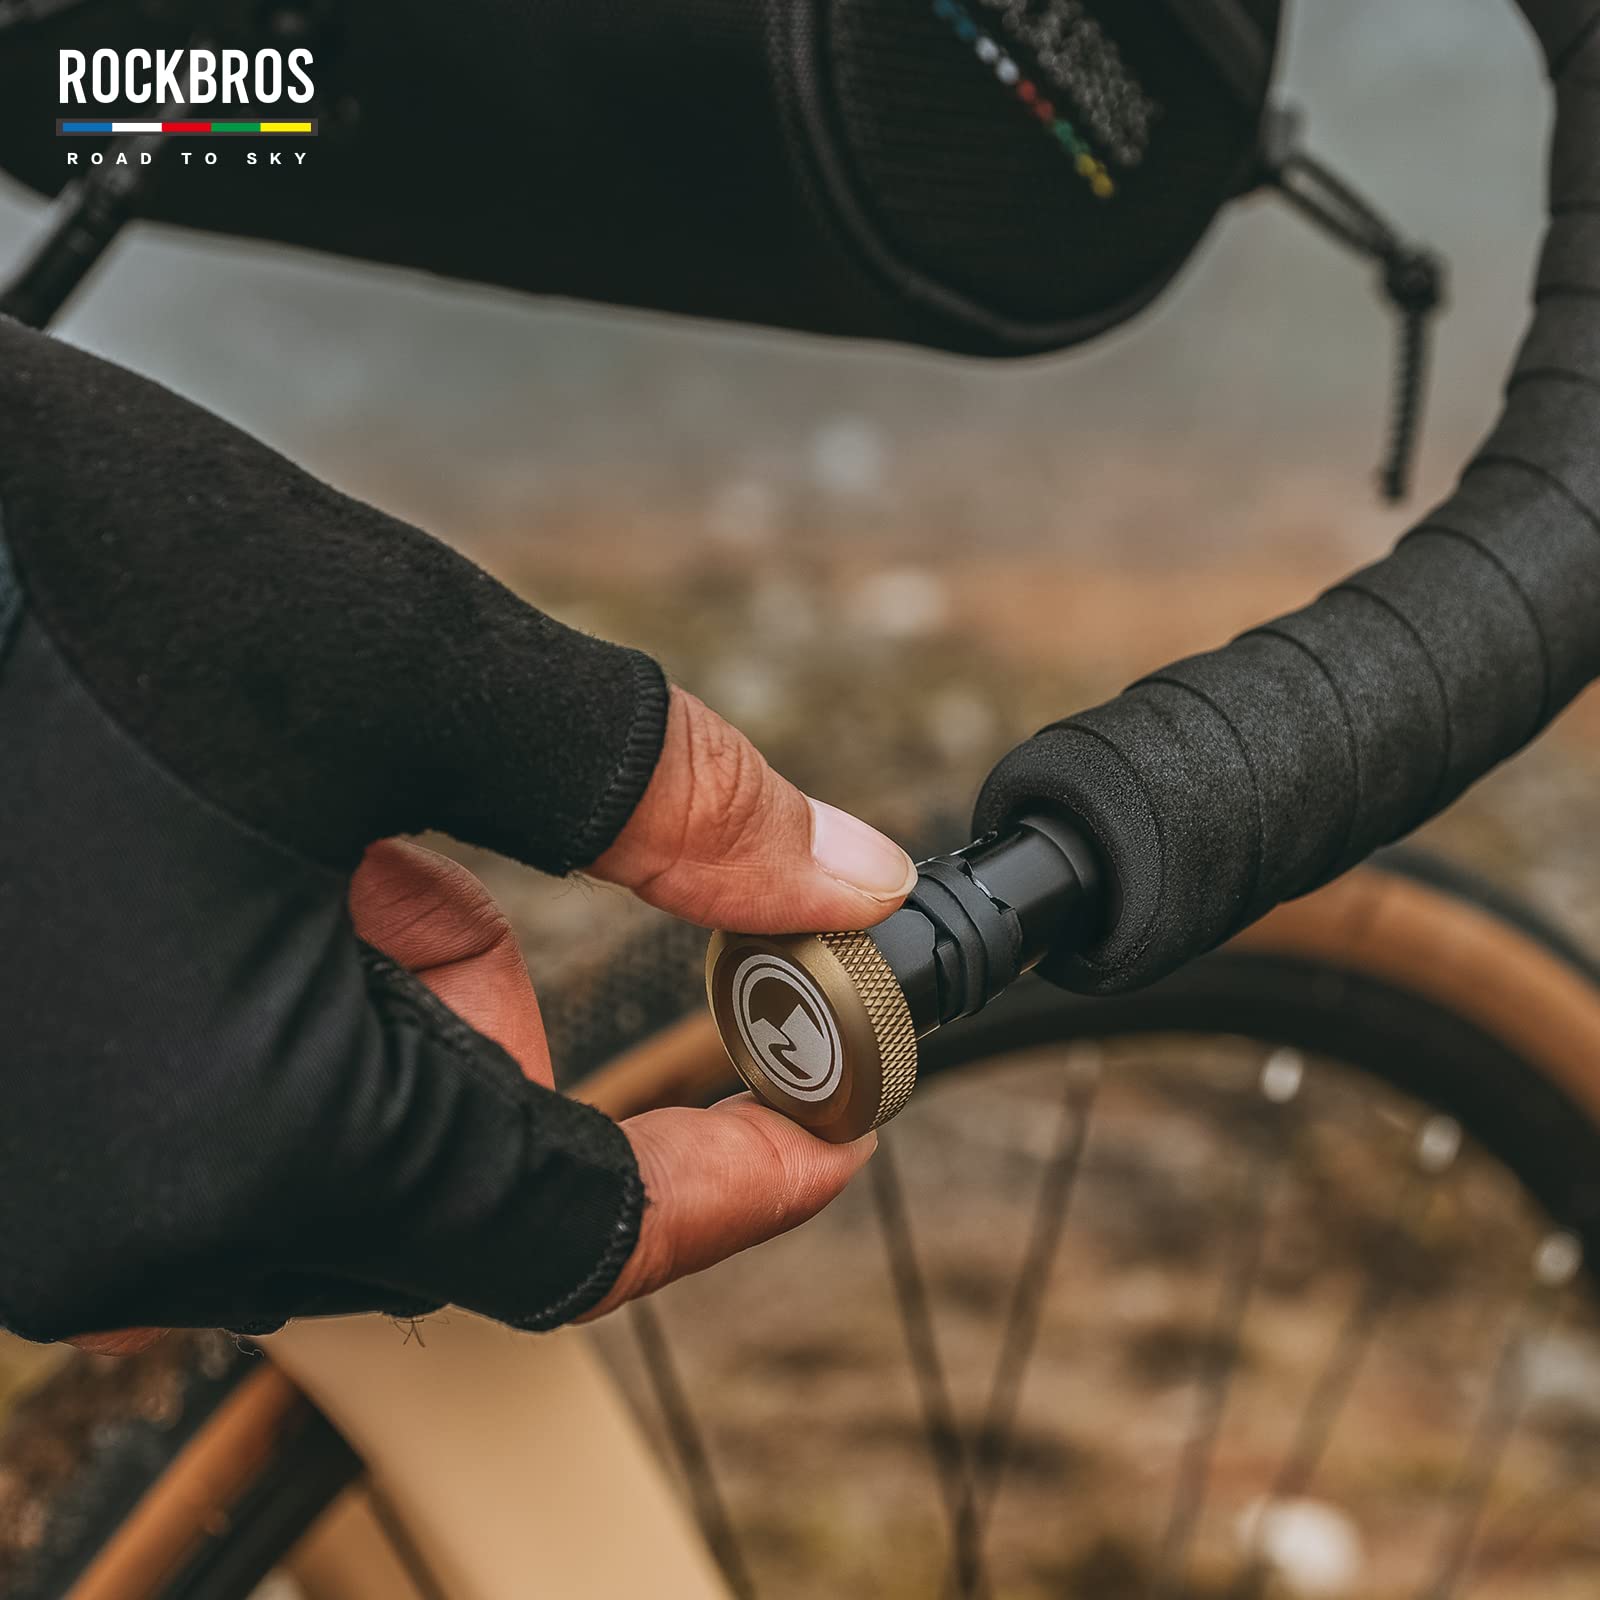 ROCKBROS Road-to-Sky Multifunction Tool 6 in 1 Bicycle Handlebar Plug